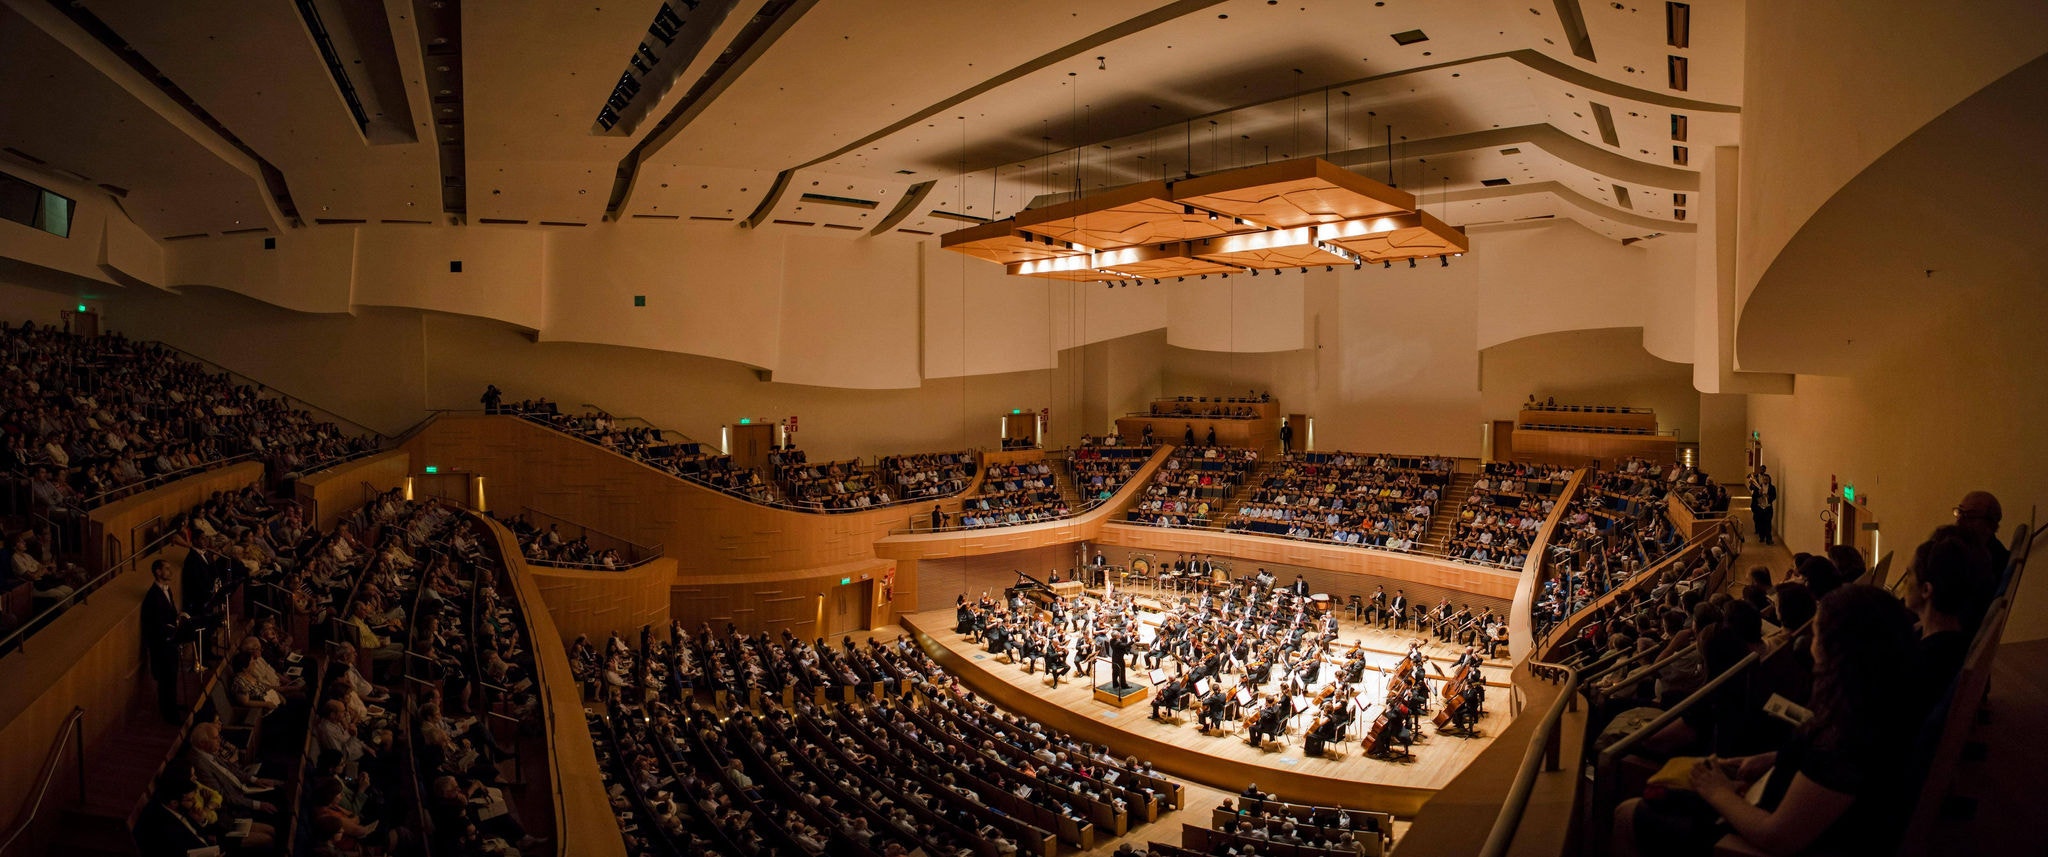 Orquestra Filarmônica durante apresentação em sua sede, a imponente Sala Minas Gerais